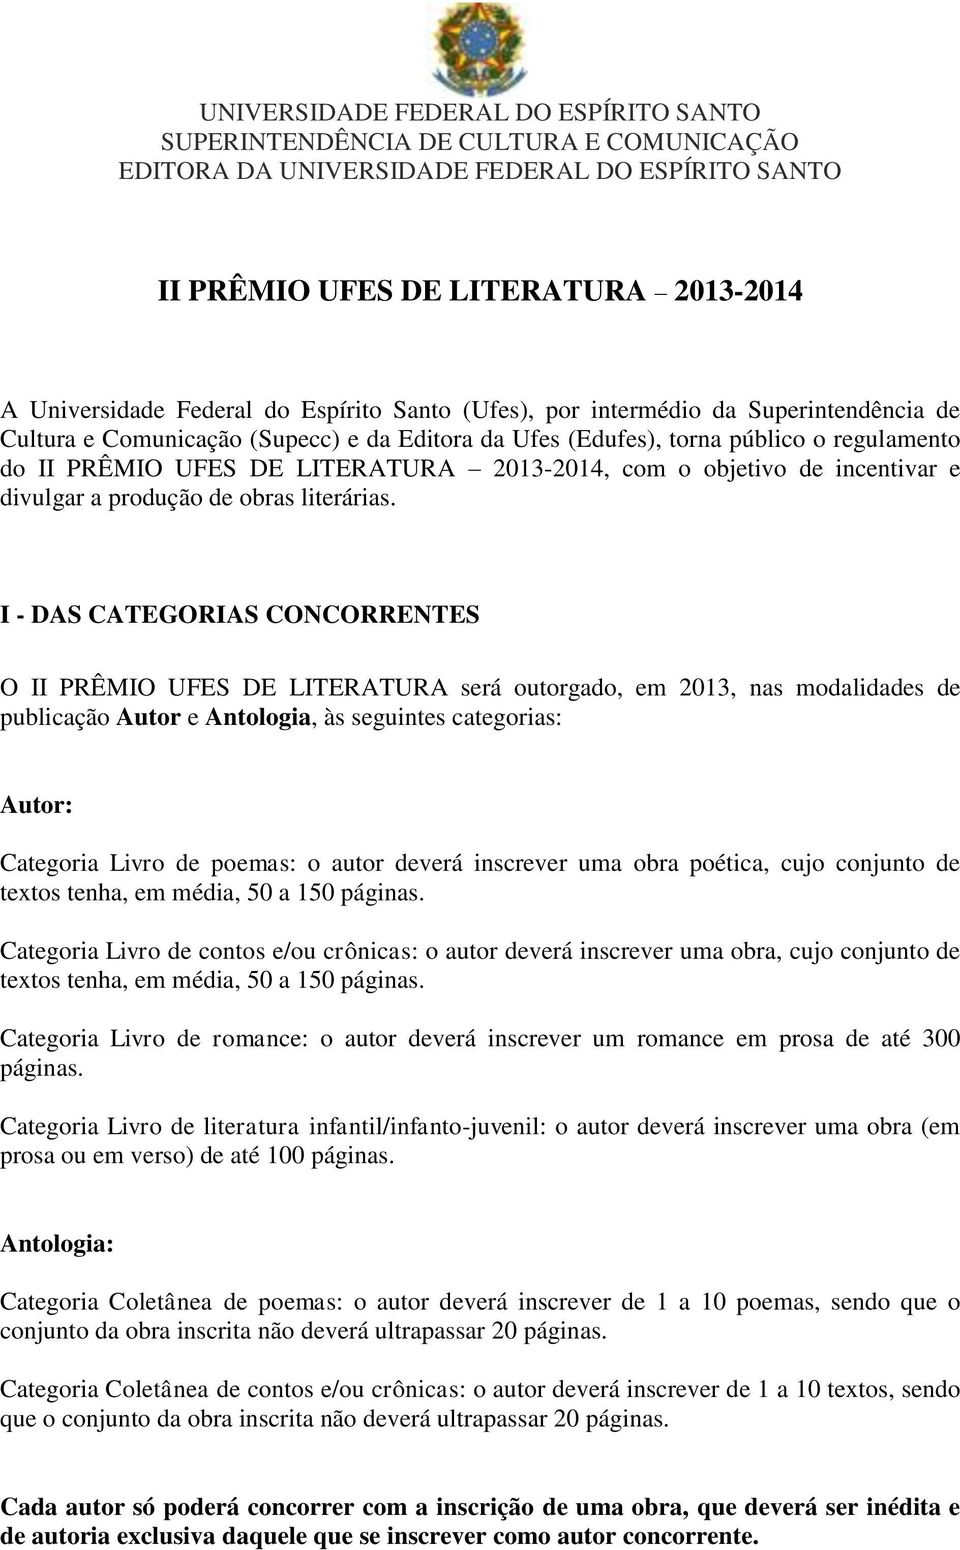 I - DAS CATEGORIAS CONCORRENTES O II PRÊMIO UFES DE LITERATURA será outorgado, em 2013, nas modalidades de publicação Autor e Antologia, às seguintes categorias: Autor: Categoria Livro de poemas: o